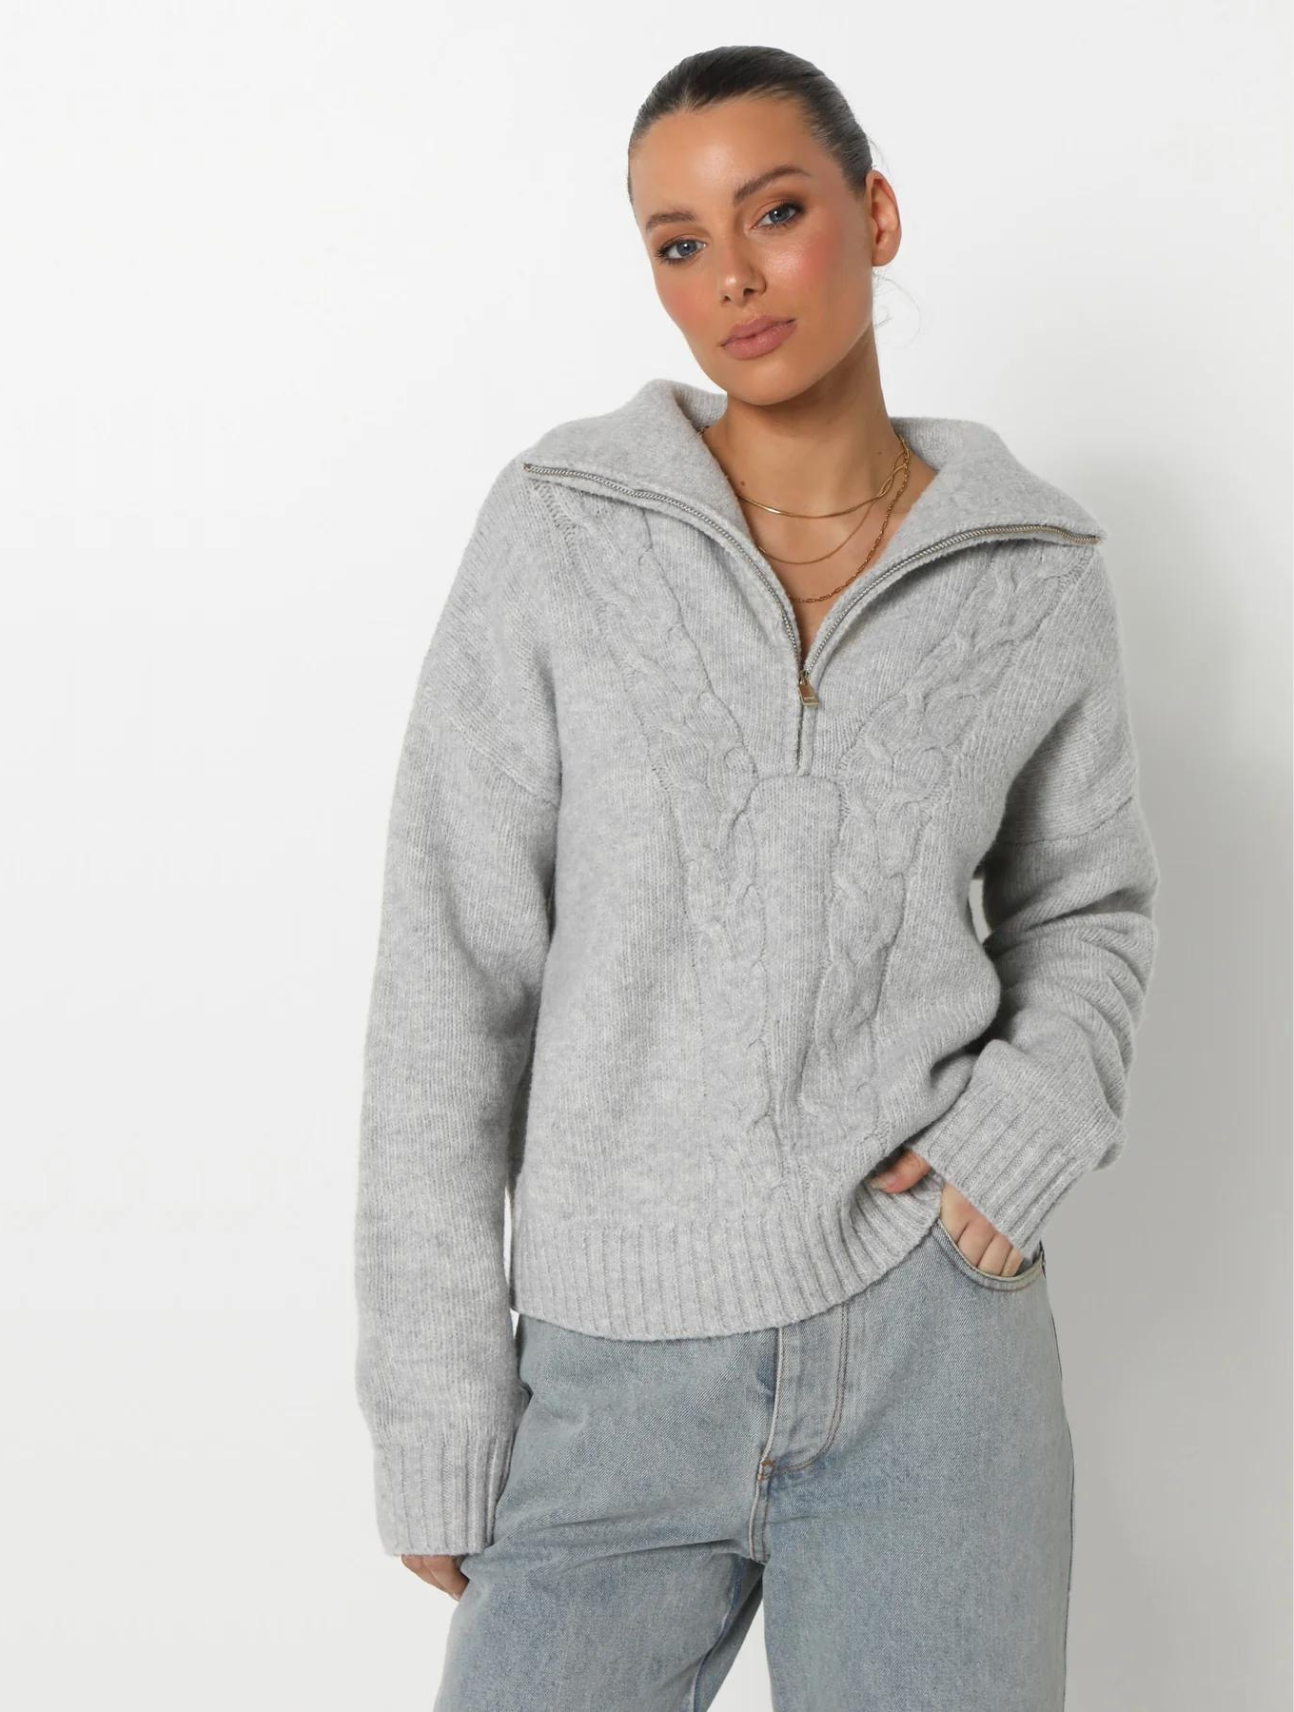 Kierra Knit Sweater